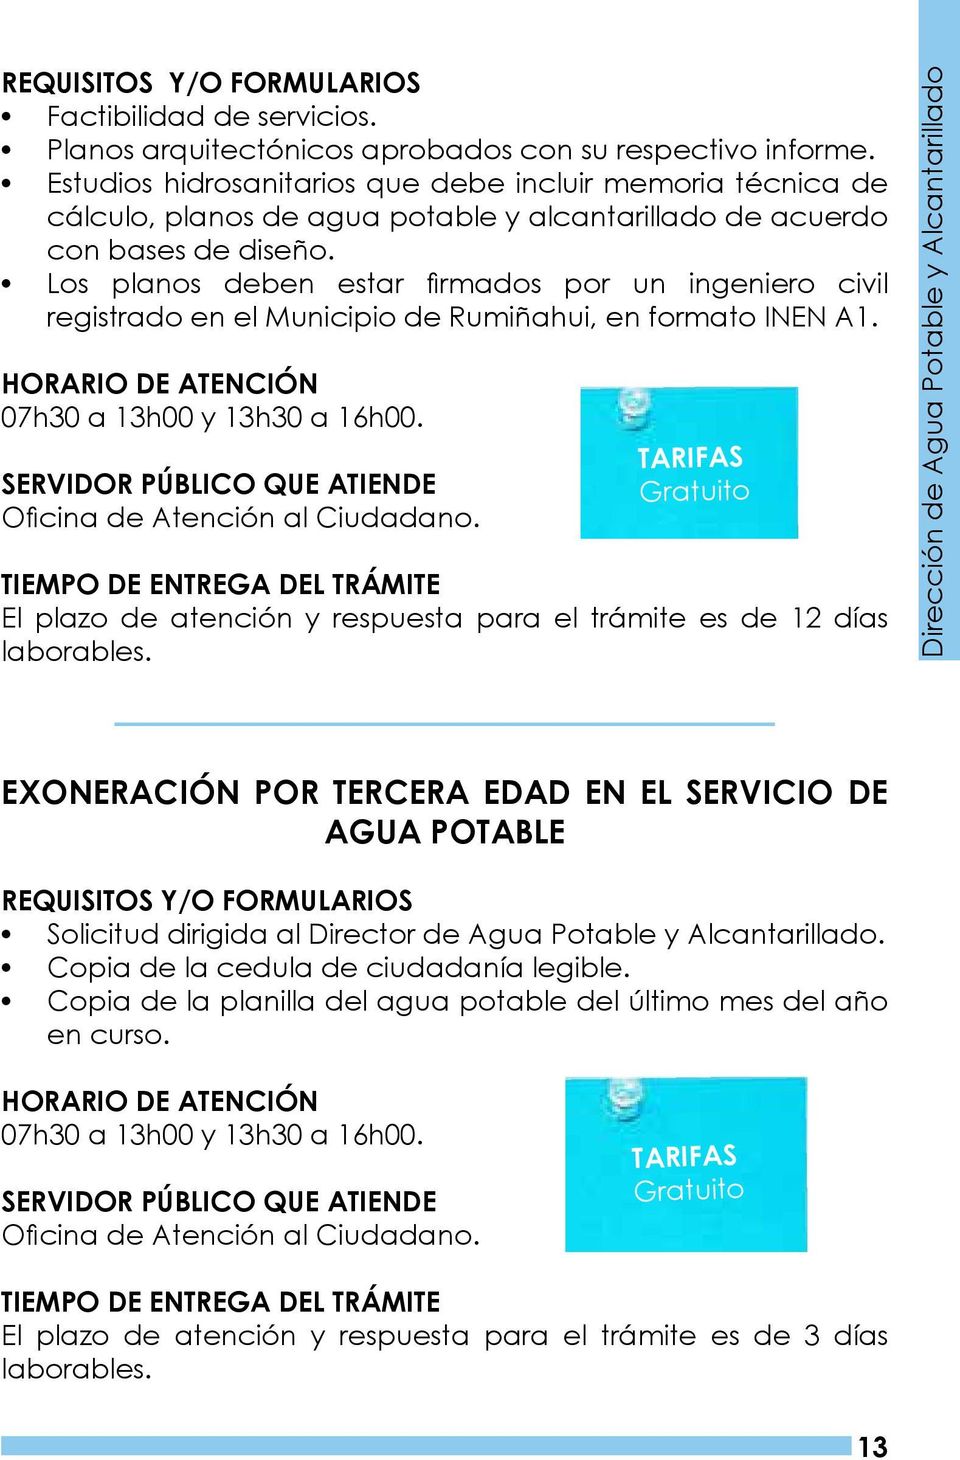 Los planos deben estar firmados por un ingeniero civil registrado en el Municipio de Rumiñahui, en formato INEN A1. 07h30 a 13h00 y 13h30 a 16h00. Oficina de Atención al Ciudadano.